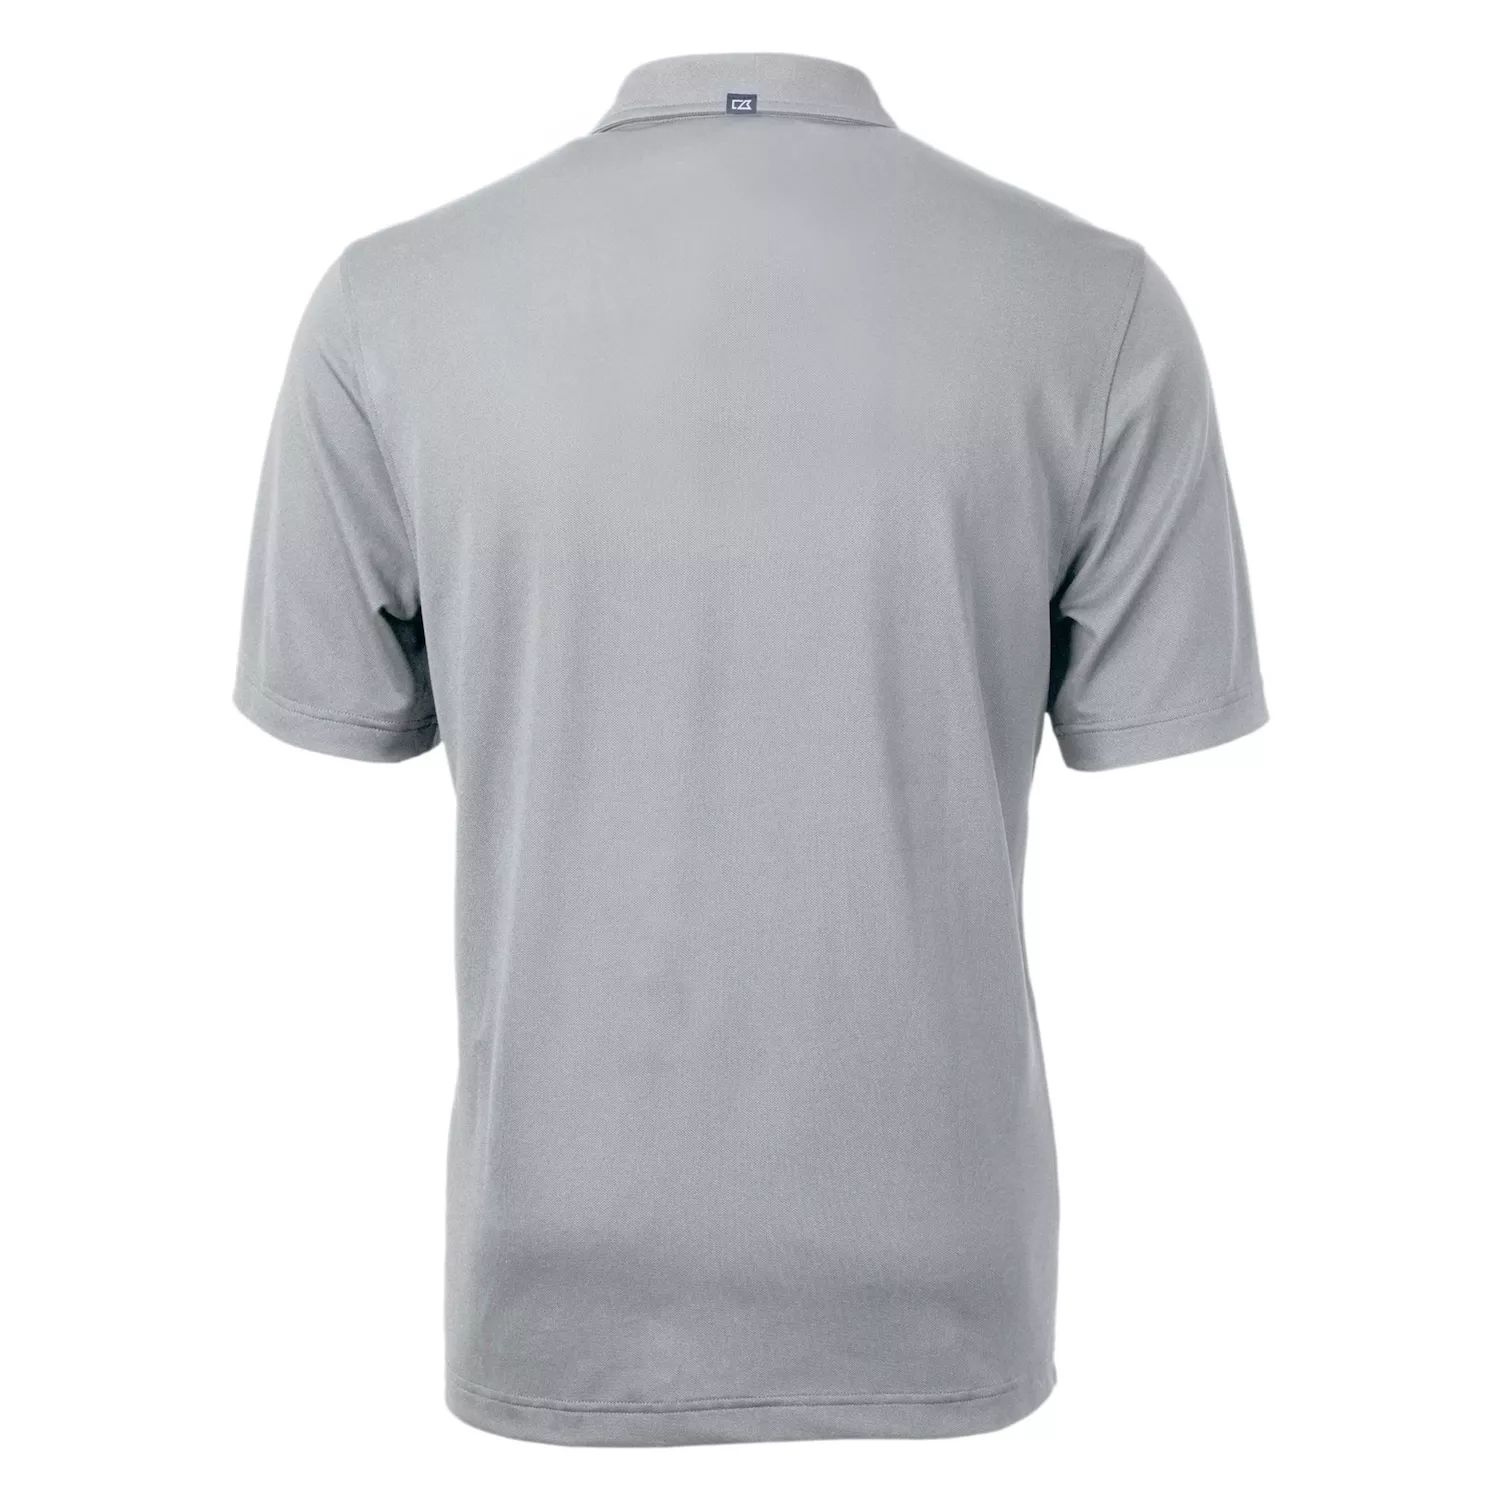 Мужская рубашка-поло большого и высокого размера из переработанного материала Virtue Eco Pique Cutter & Buck мужская рубашка поло большого и высокого размера из переработанного материала virtue eco pique stripe black cutter